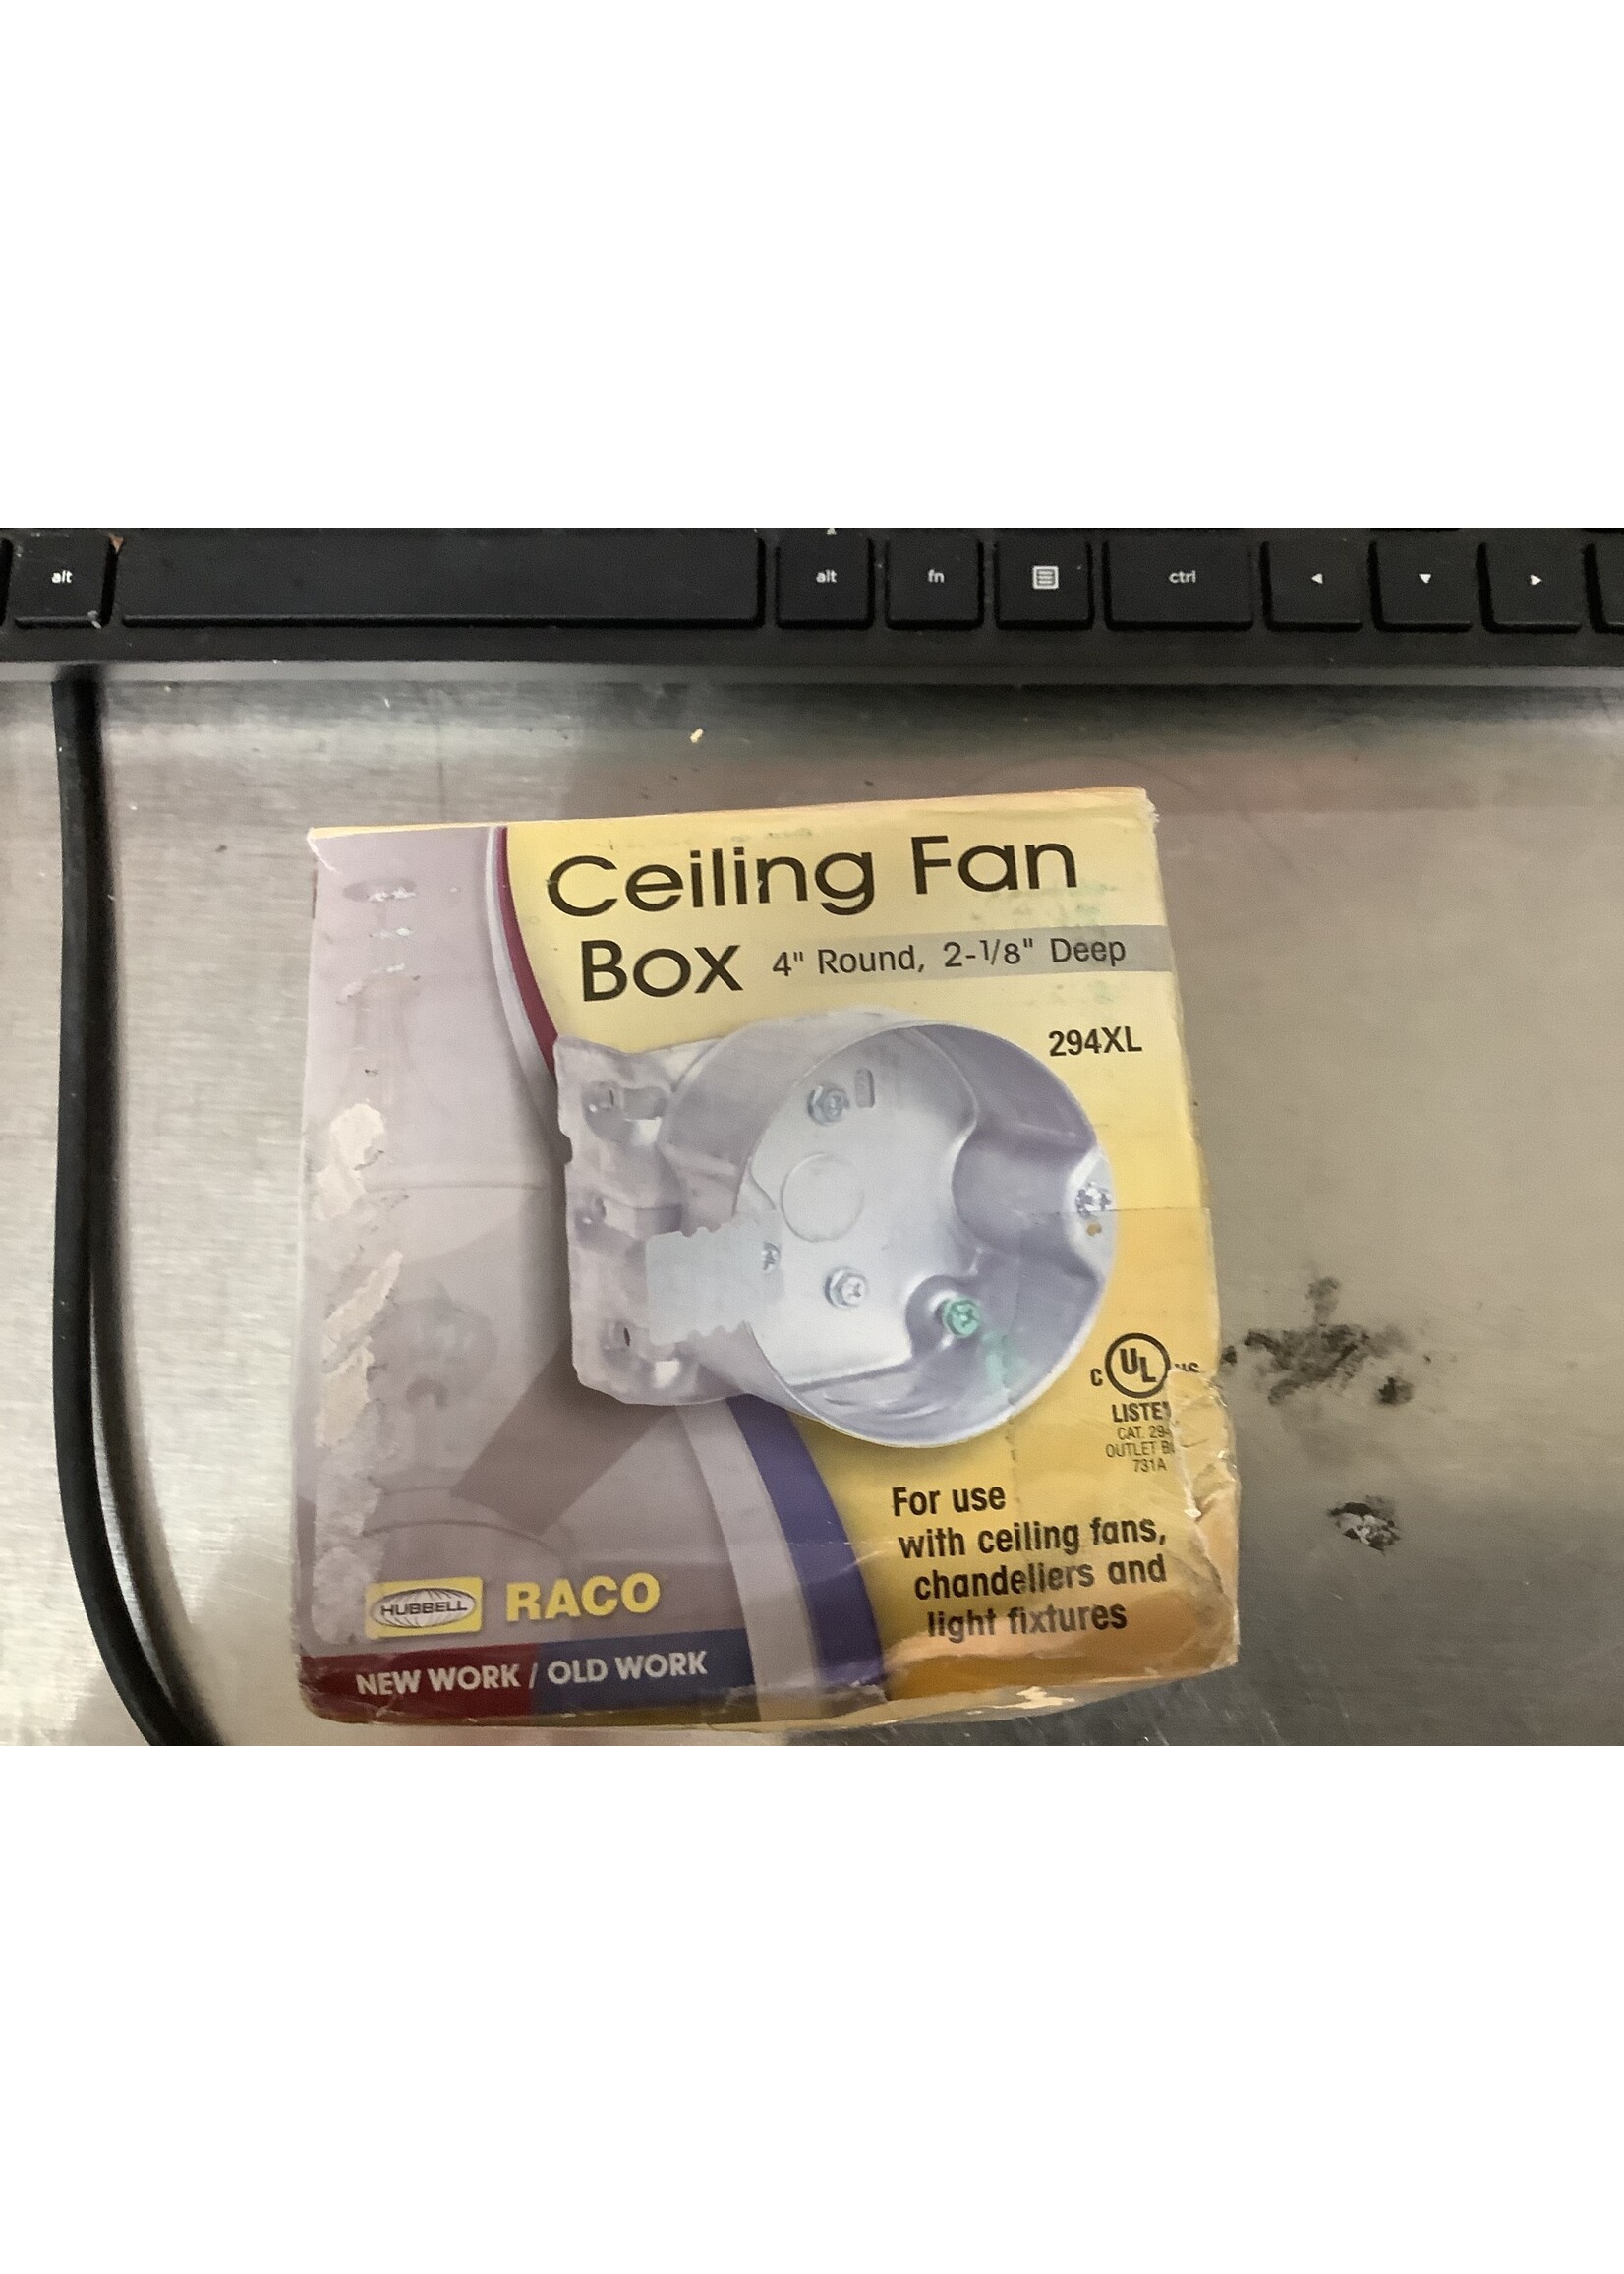 *Open Box Ceiling Fan Box 4" Round 2 1/8 Deep